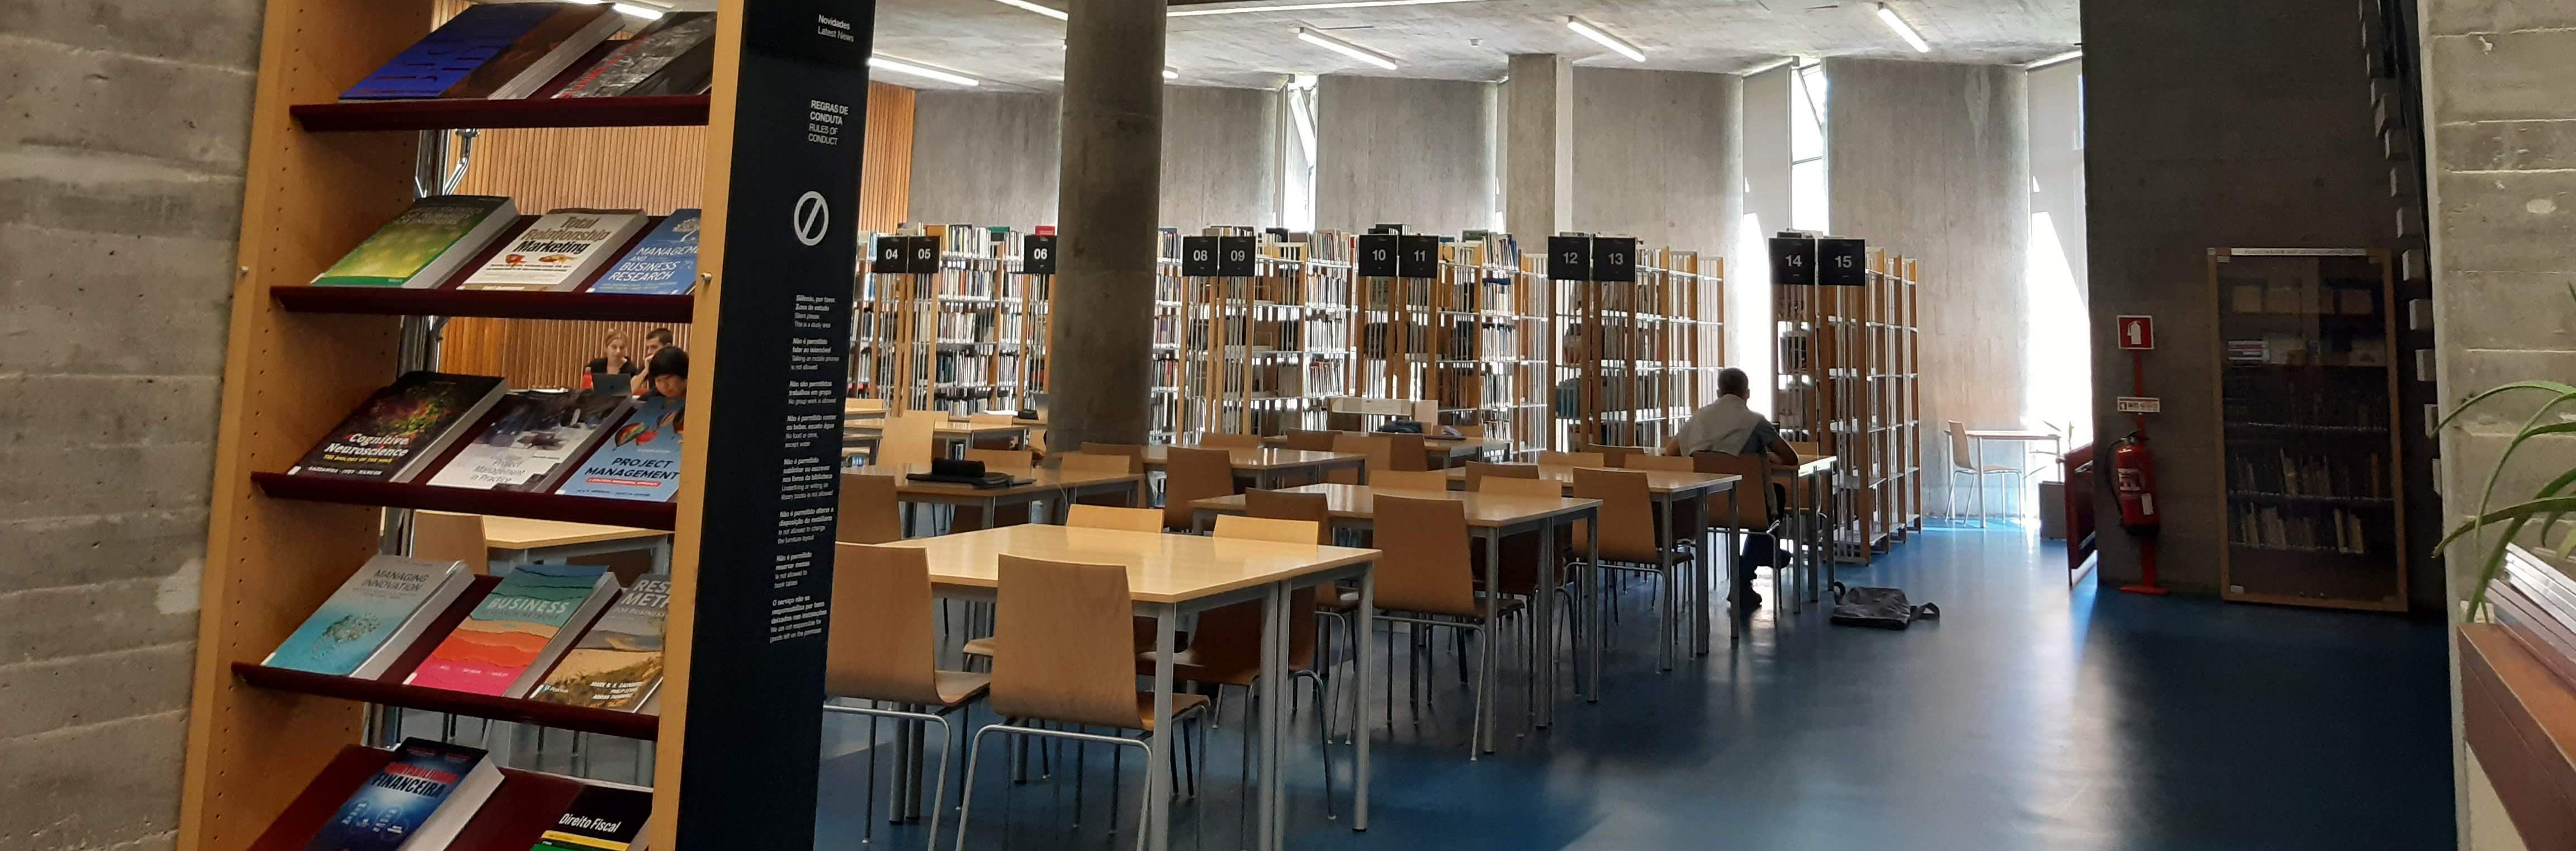 Biblioteca da Faculdade de Economia